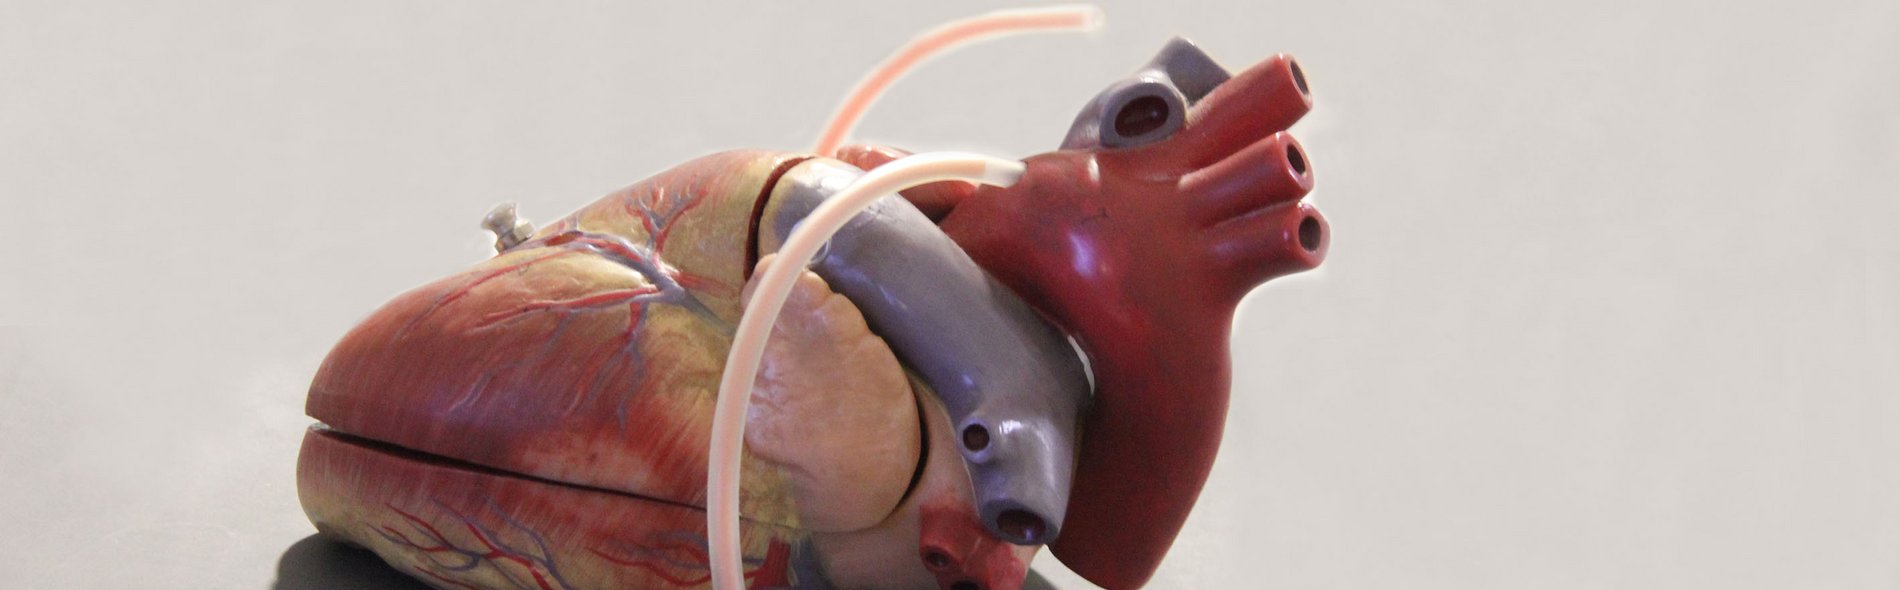 Kardiologie Herz